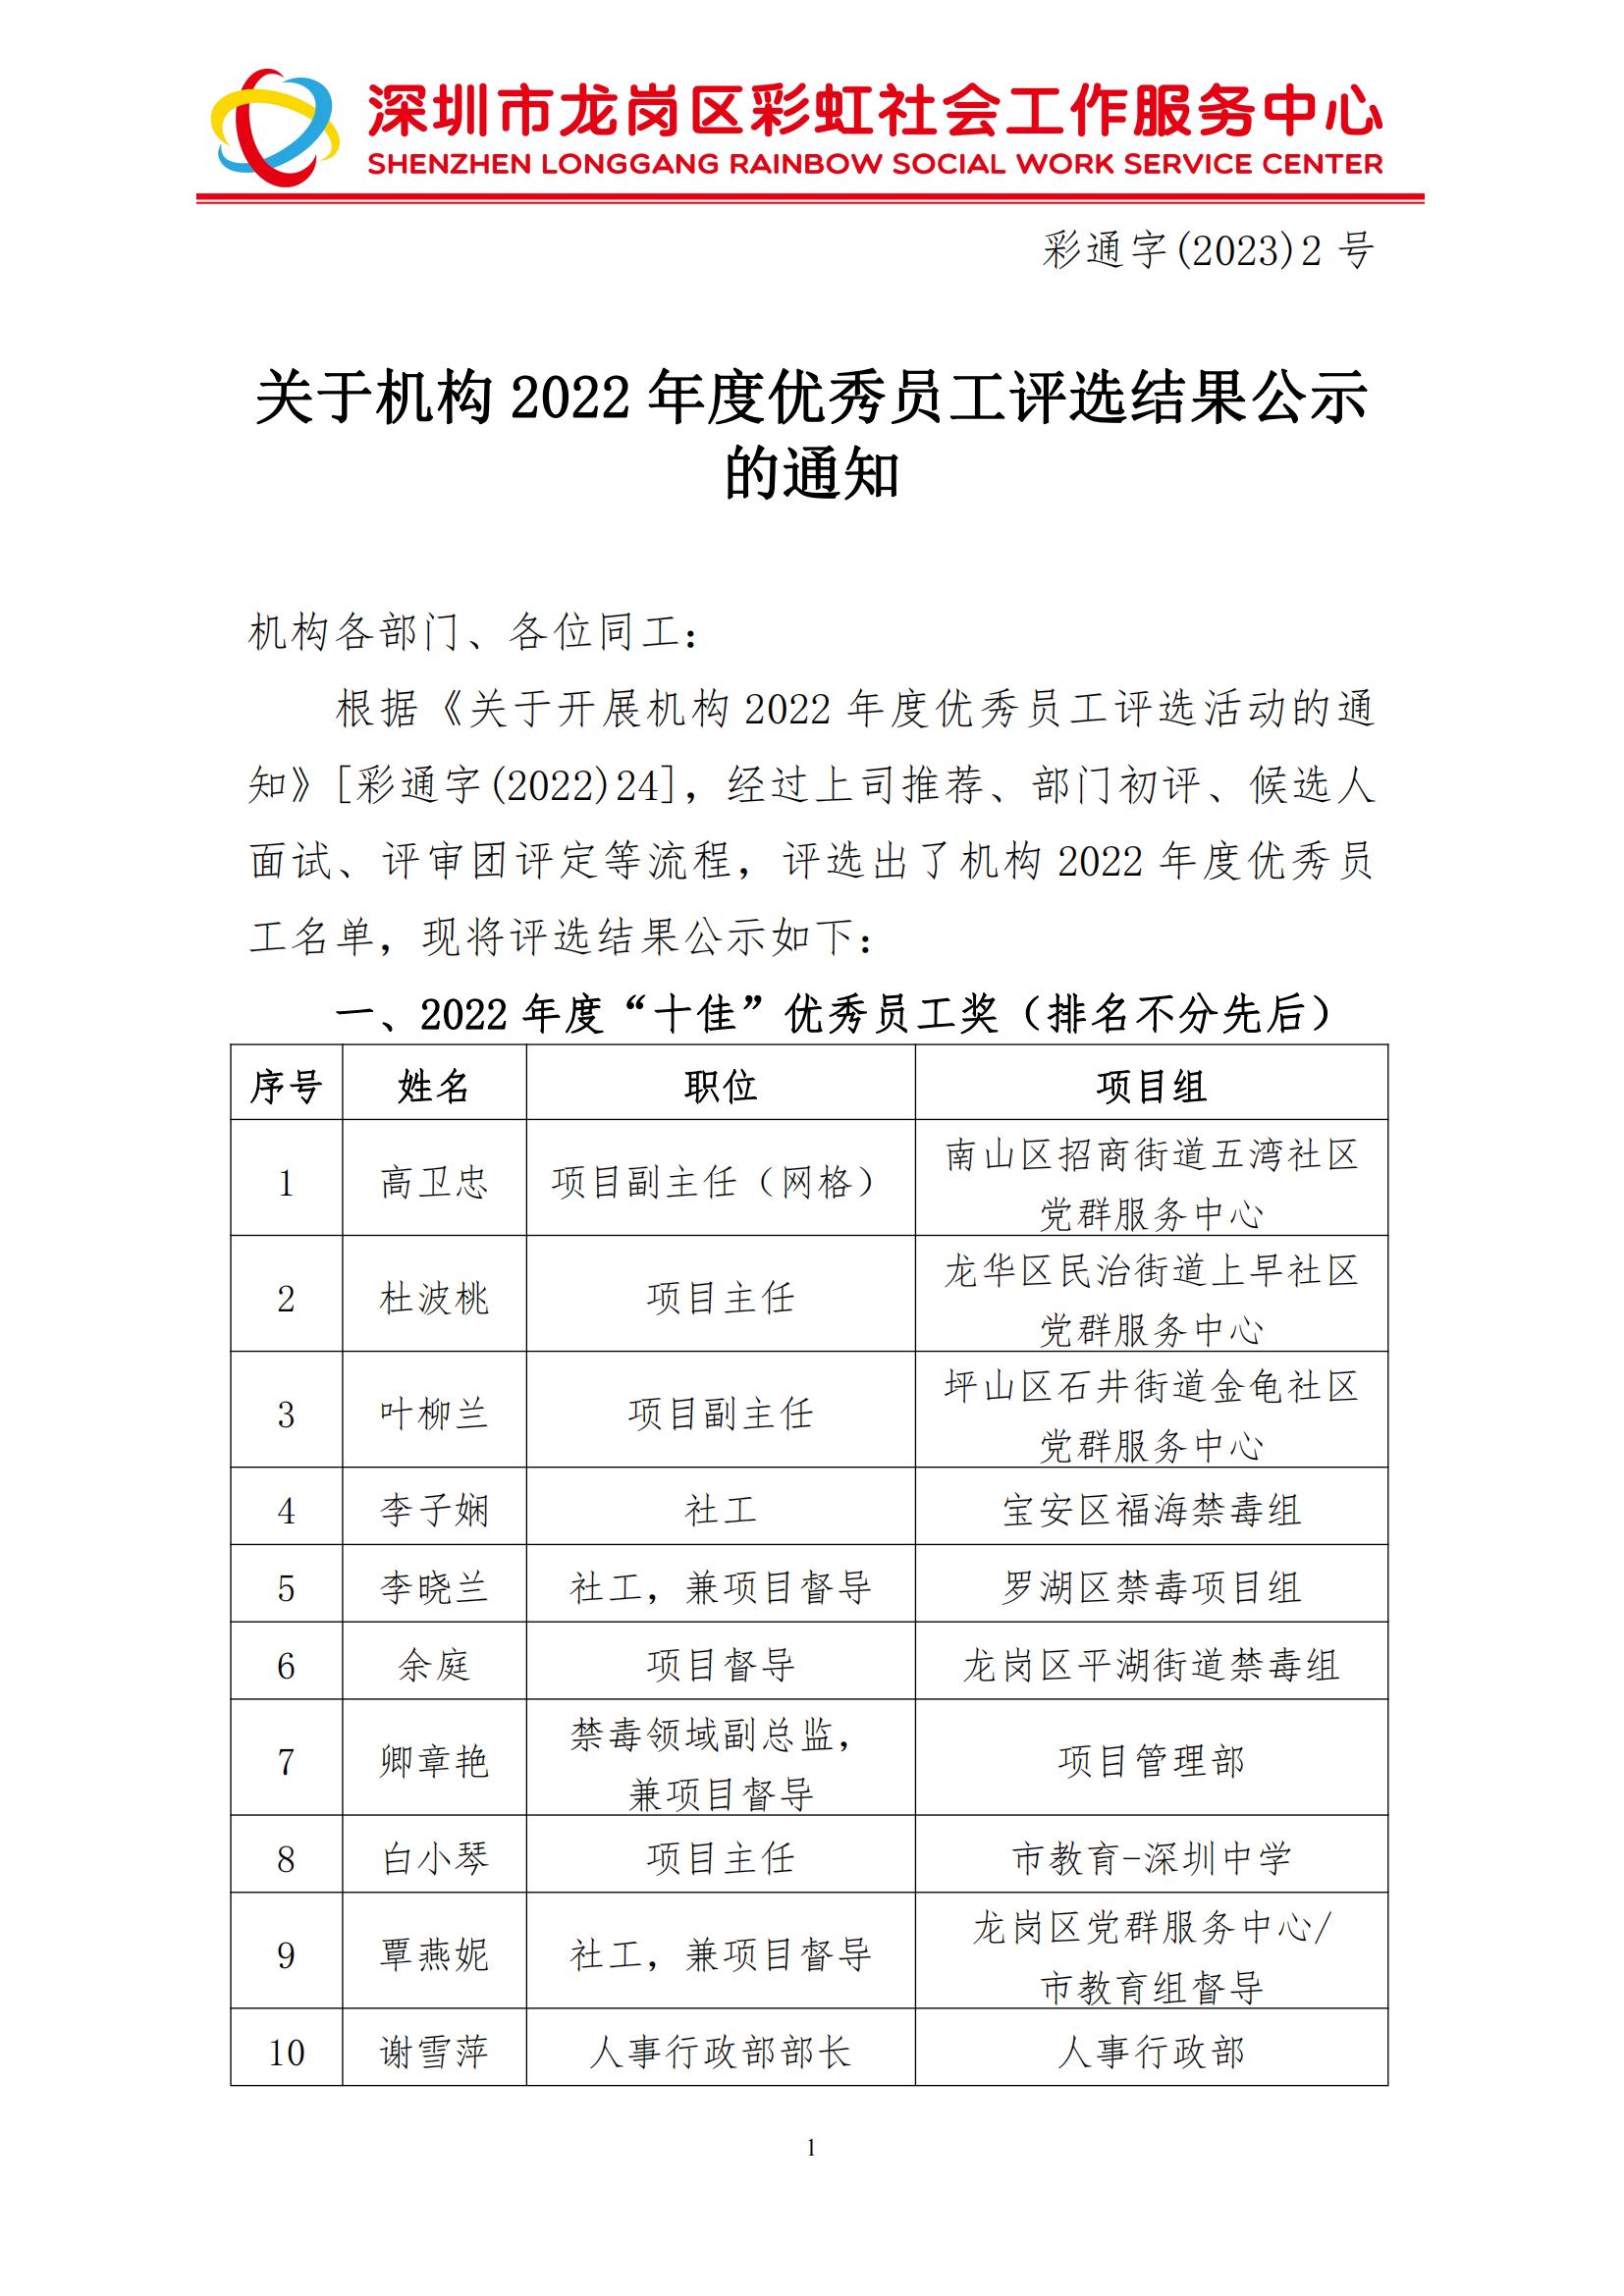 彩通字(2023)2-关于机构2022年度优秀员工评选结果公示的通知_已签章_00.jpg